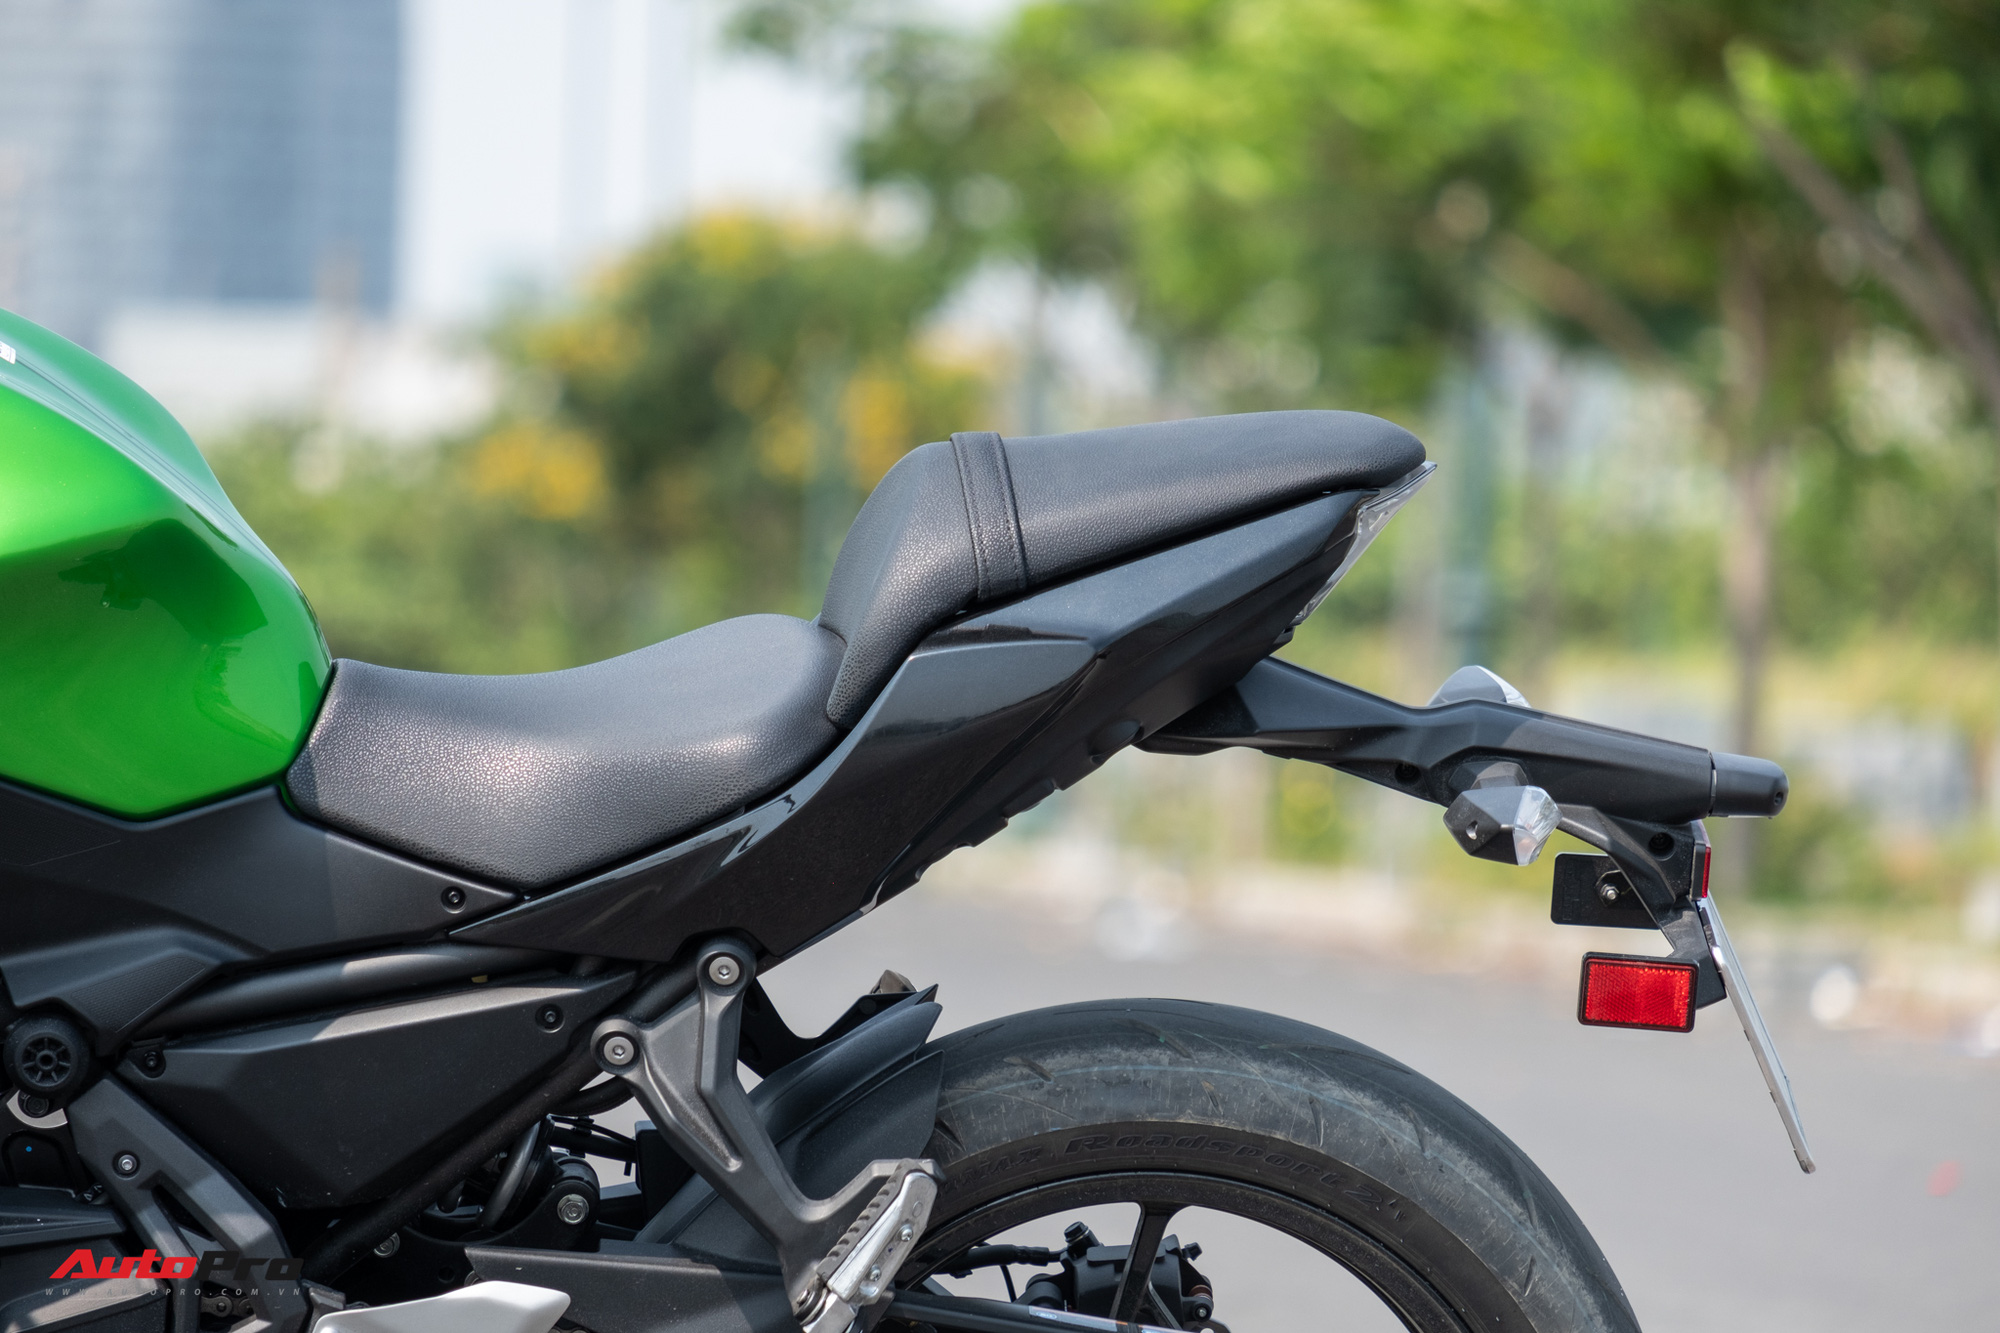 Đánh giá Kawasaki Z650: Naked bike cỡ trung đạt tiêu chí Ngon, bổ, nhưng tạm rẻ - Ảnh 9.